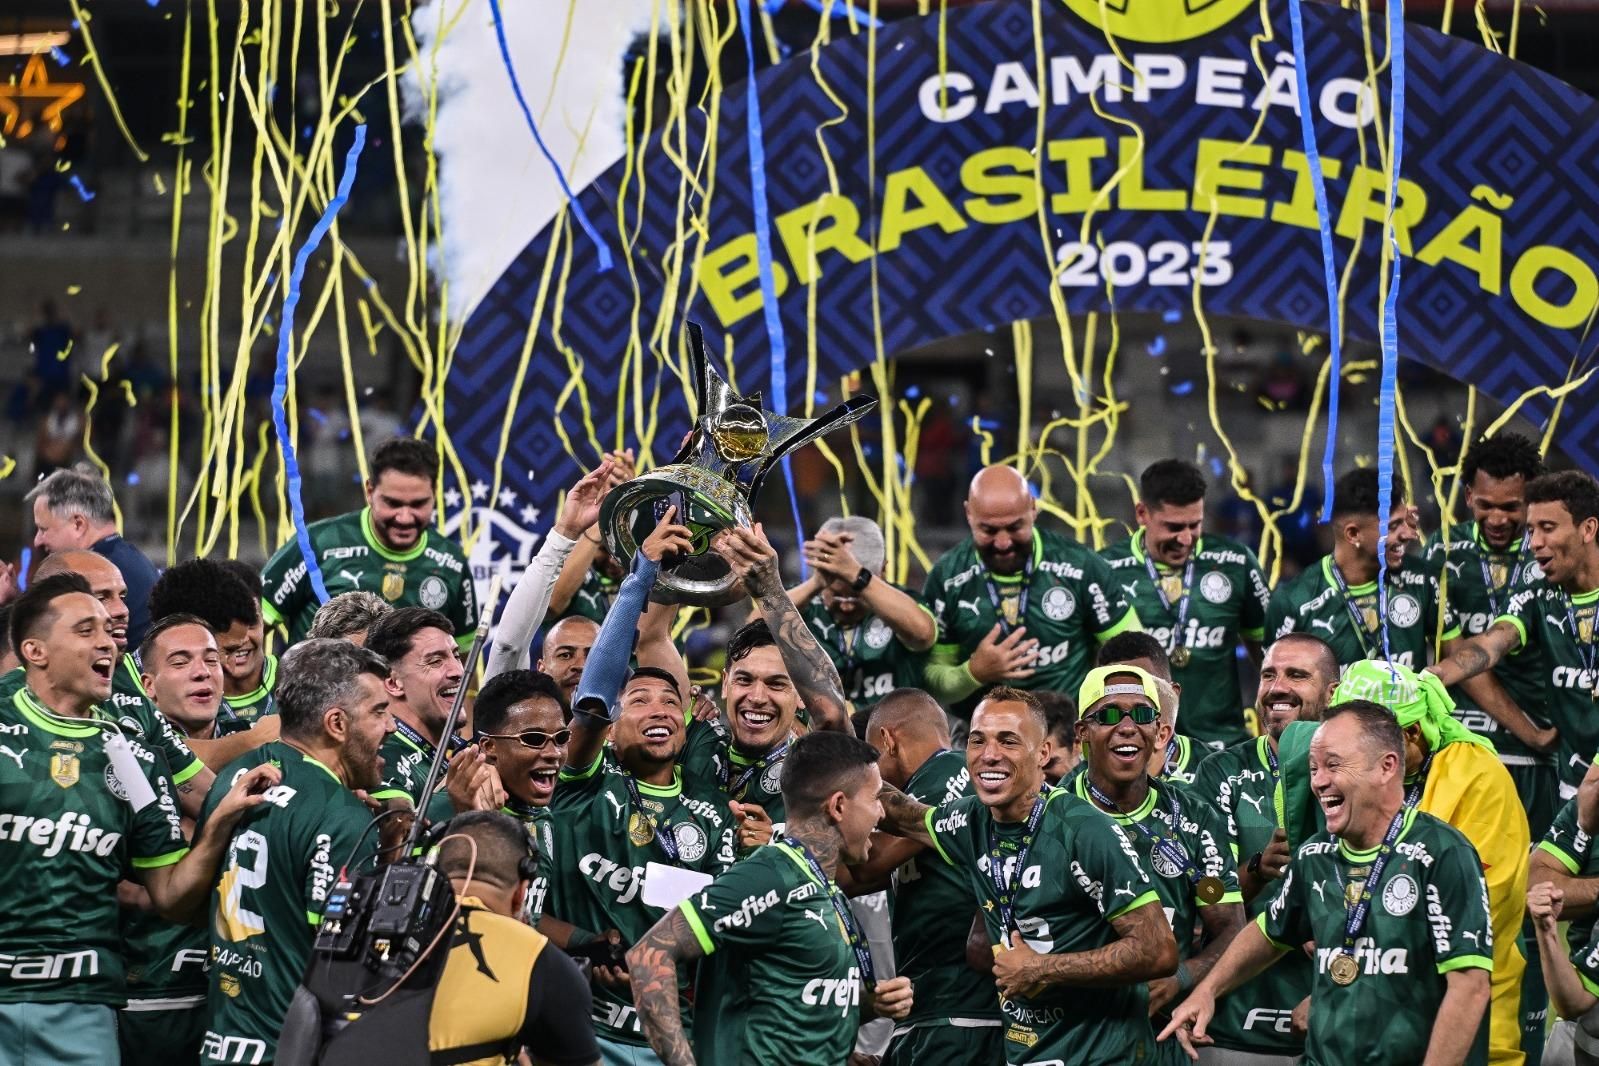 Palmeiras soma mais empates do que vitórias no Campeonato Brasileiro 2023